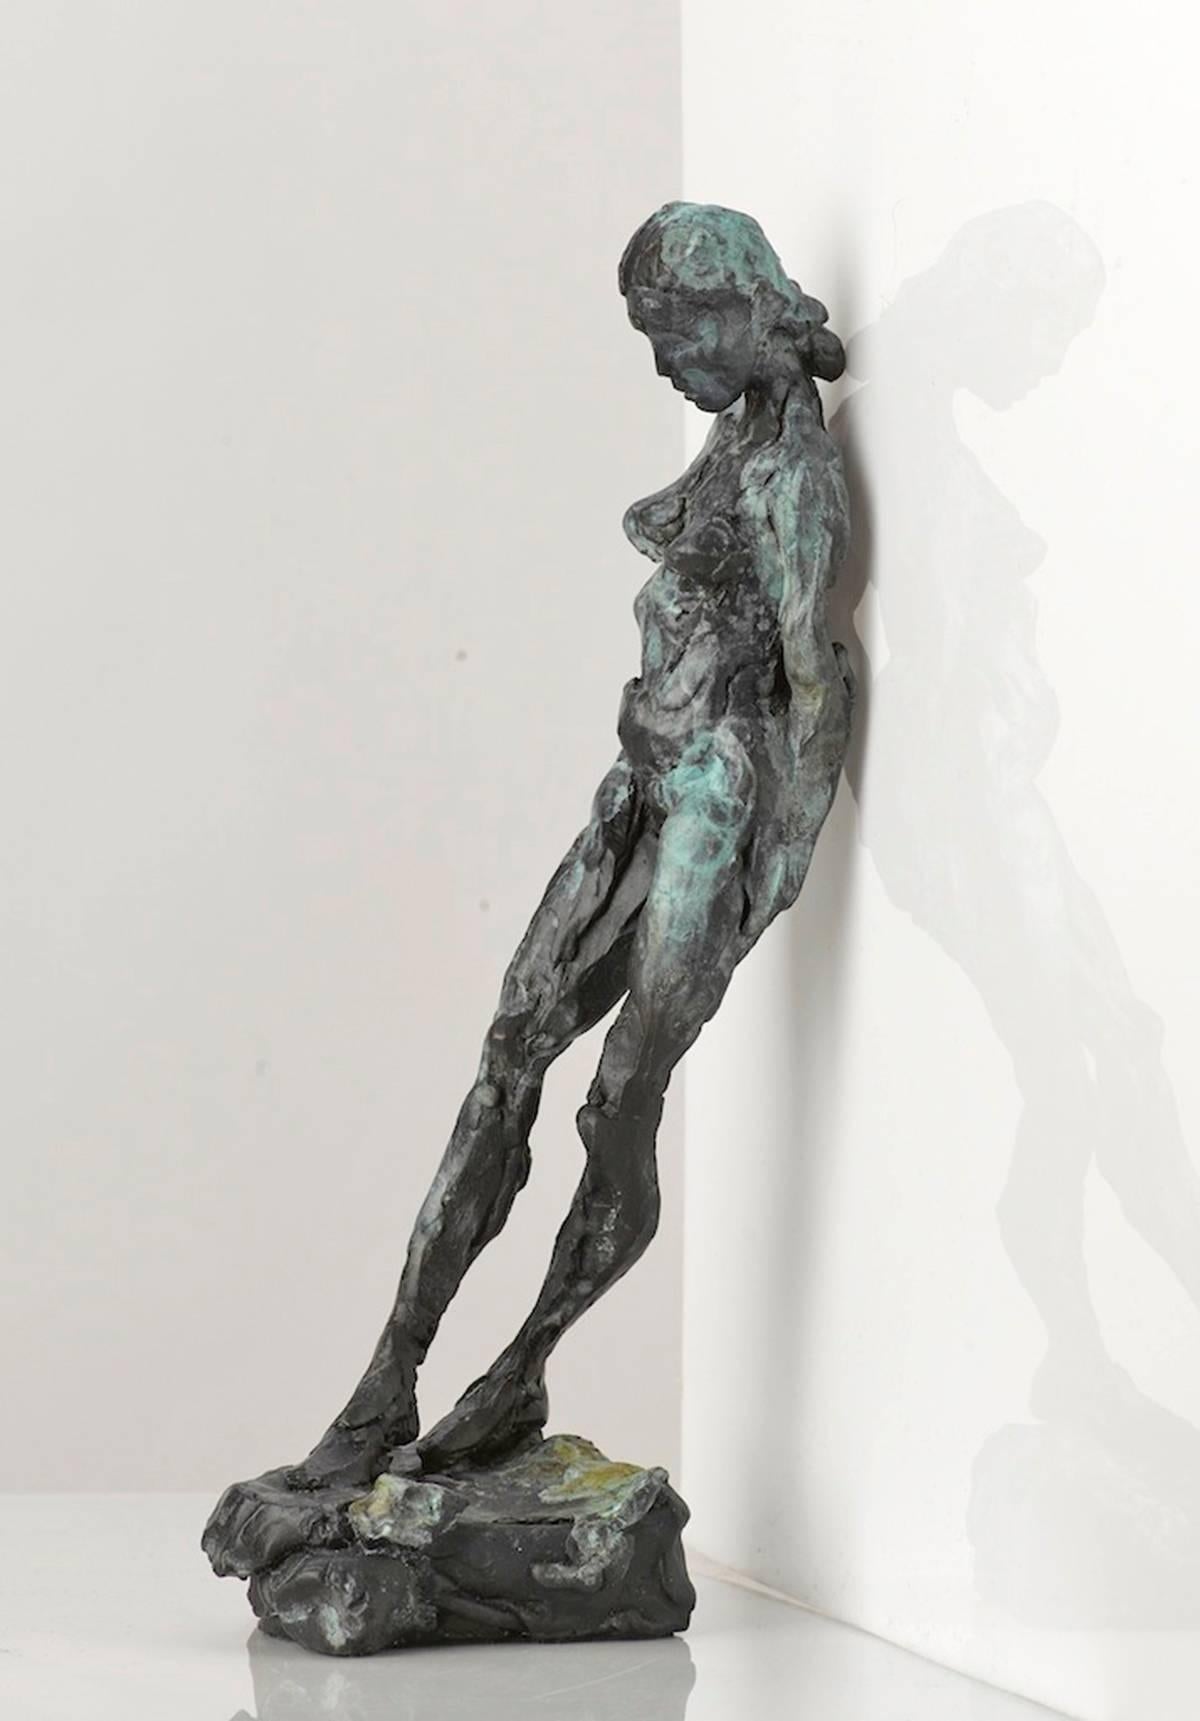 Figurative Sculpture Richard Tosczak - Sculpture XXXII 4/8 - nu, femme allongée, figure en bronze, statuette patinée